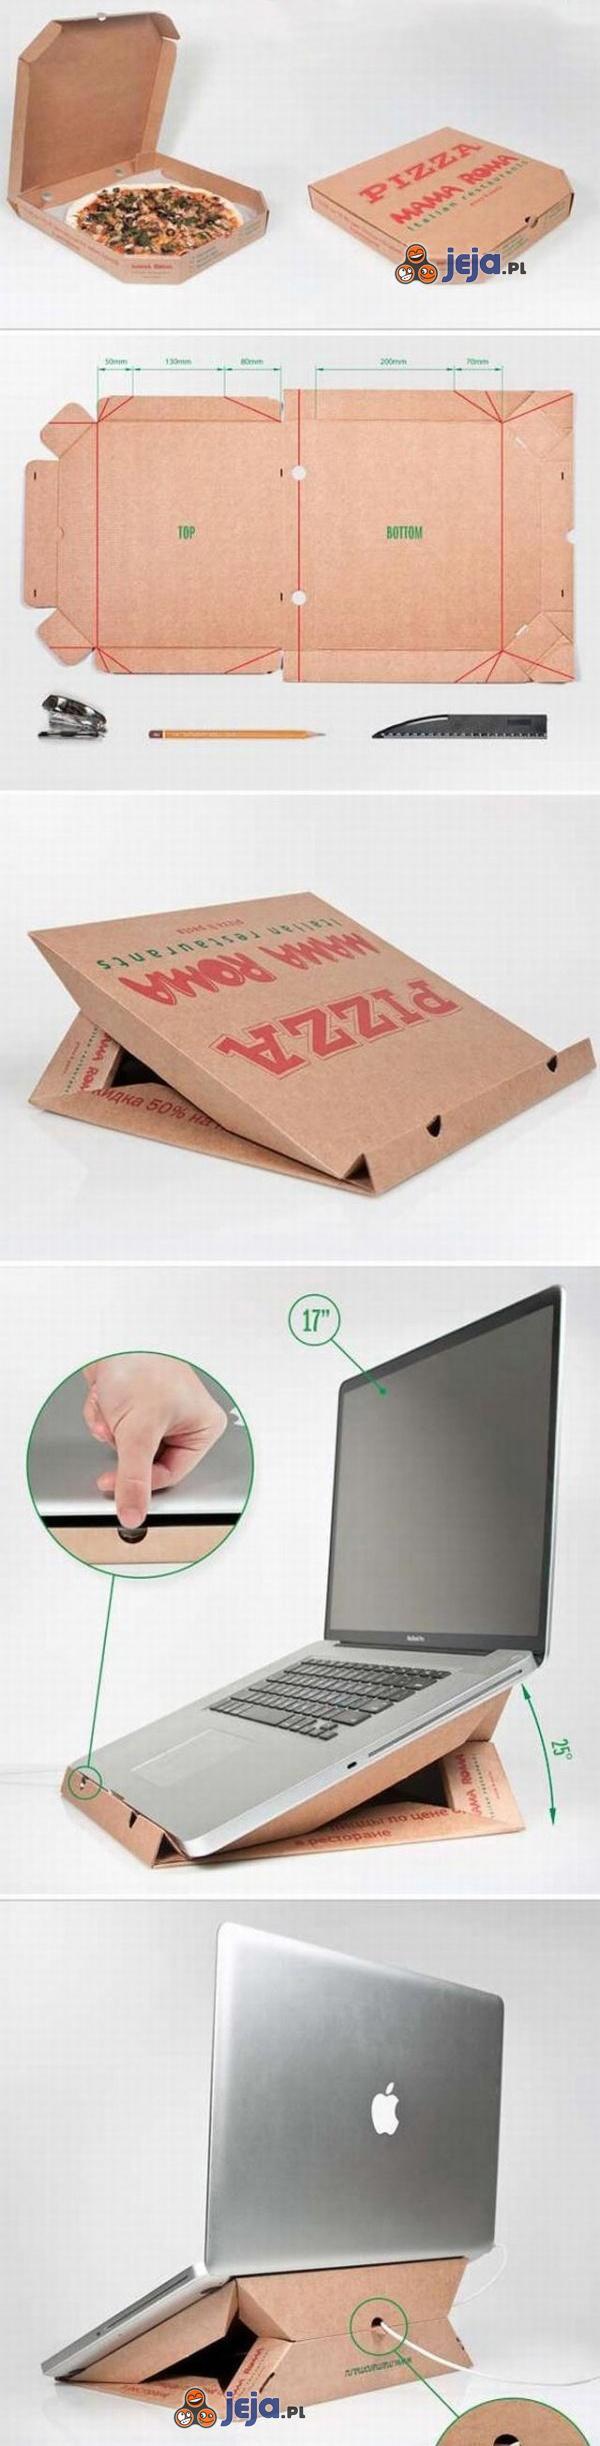 Podstawka do laptopa z pudełka po pizzy